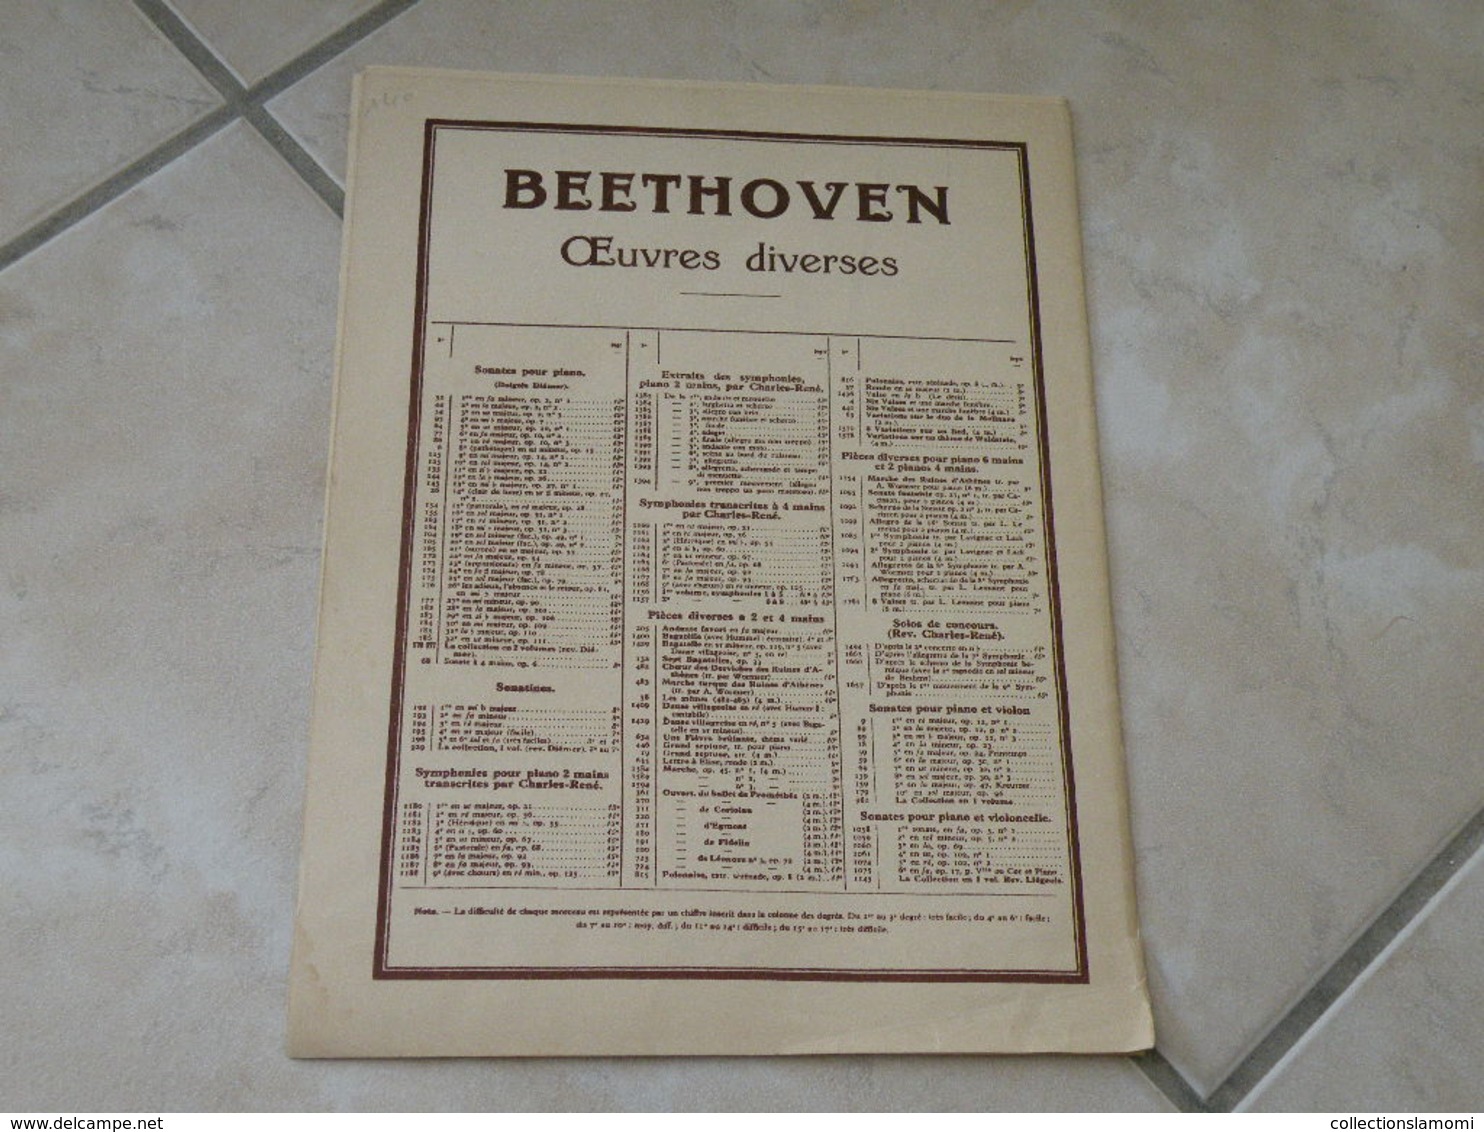 Clair de Lune sonate n°14 (L.Van. Beethoven) - Musique classique piano (Panthéon des pianistes)